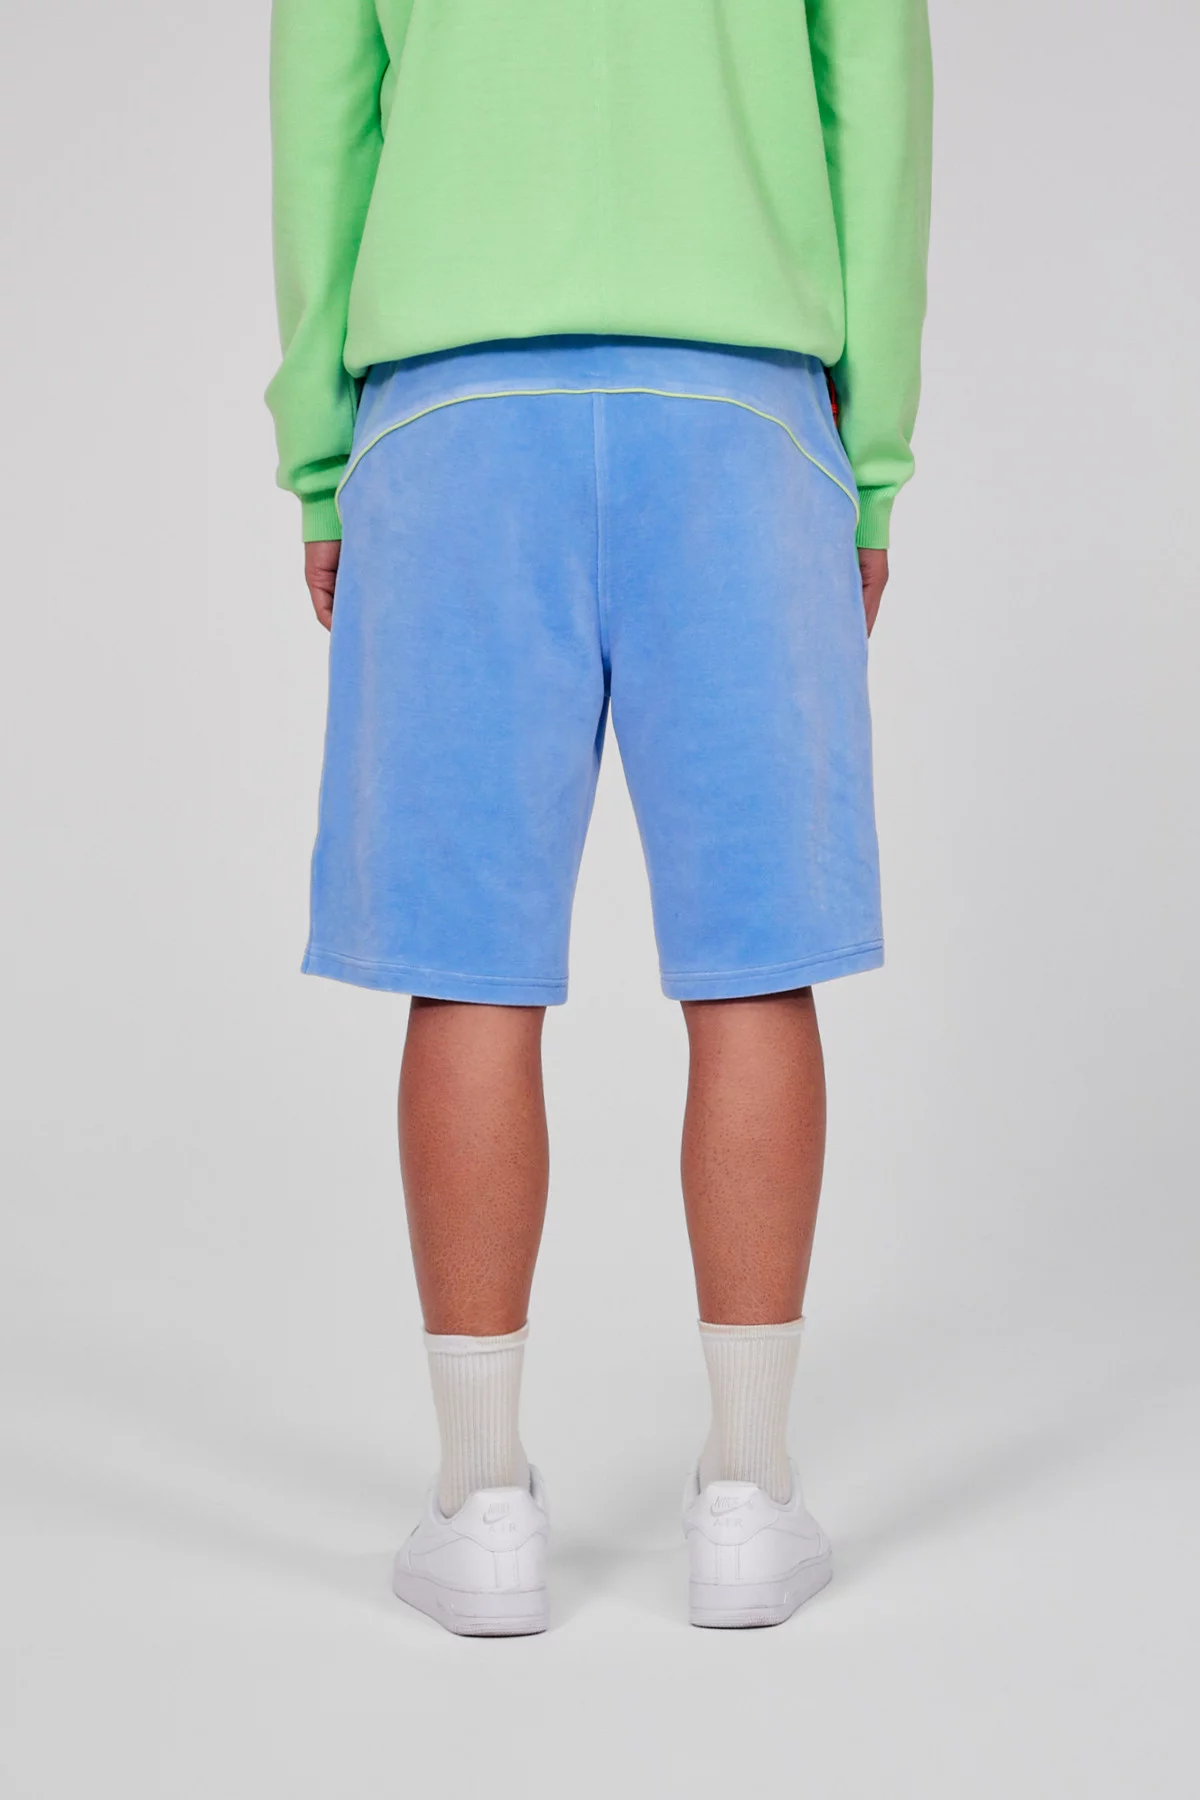 Lucas two-tone fleece shorts